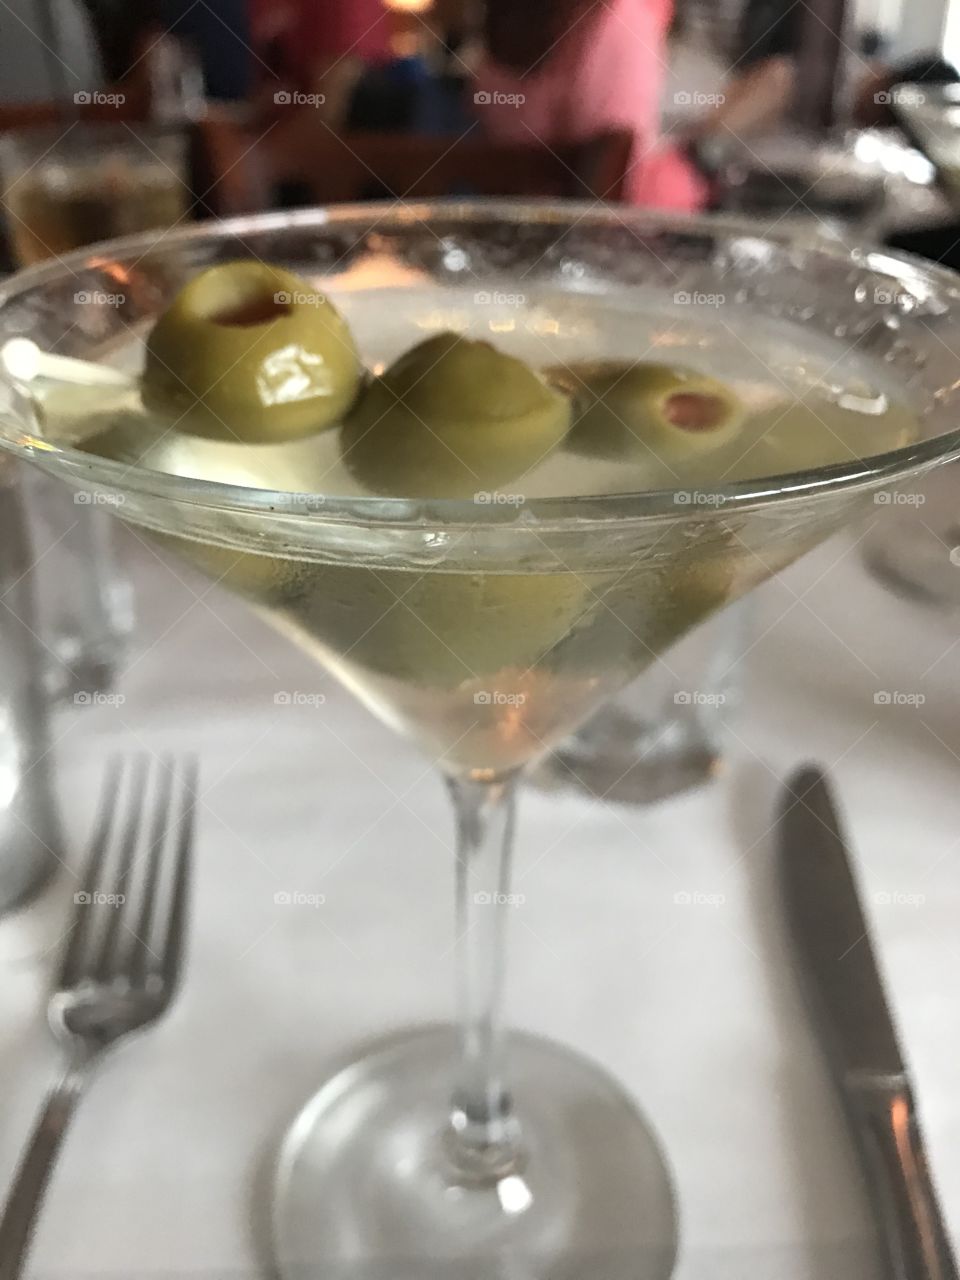 Martini time